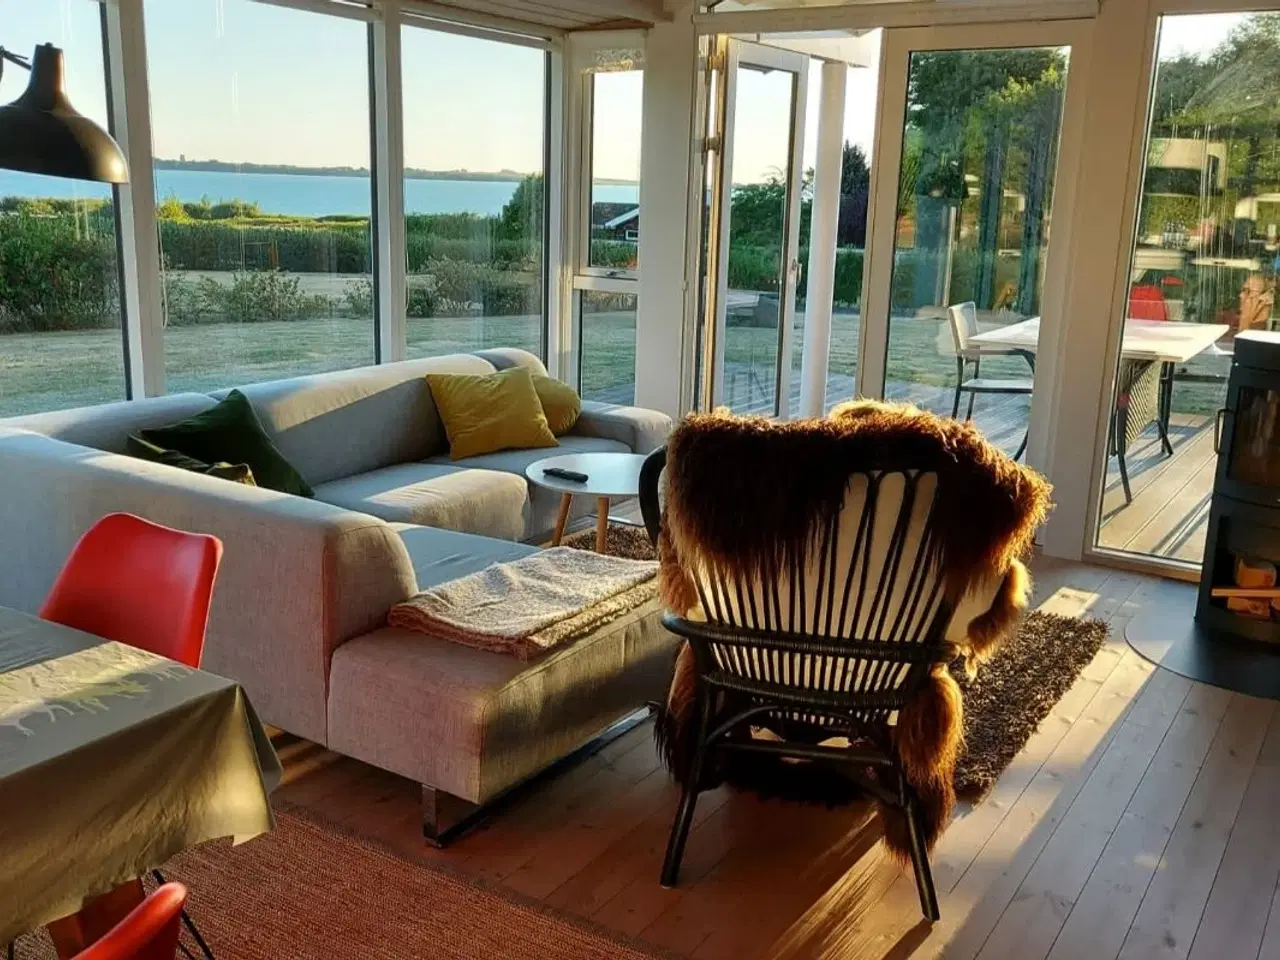 Billede 2 - Nyt og lyst sommerhus til 8 personer ved Helnæs Bugt, Fyn med panoramaudsigt til havet